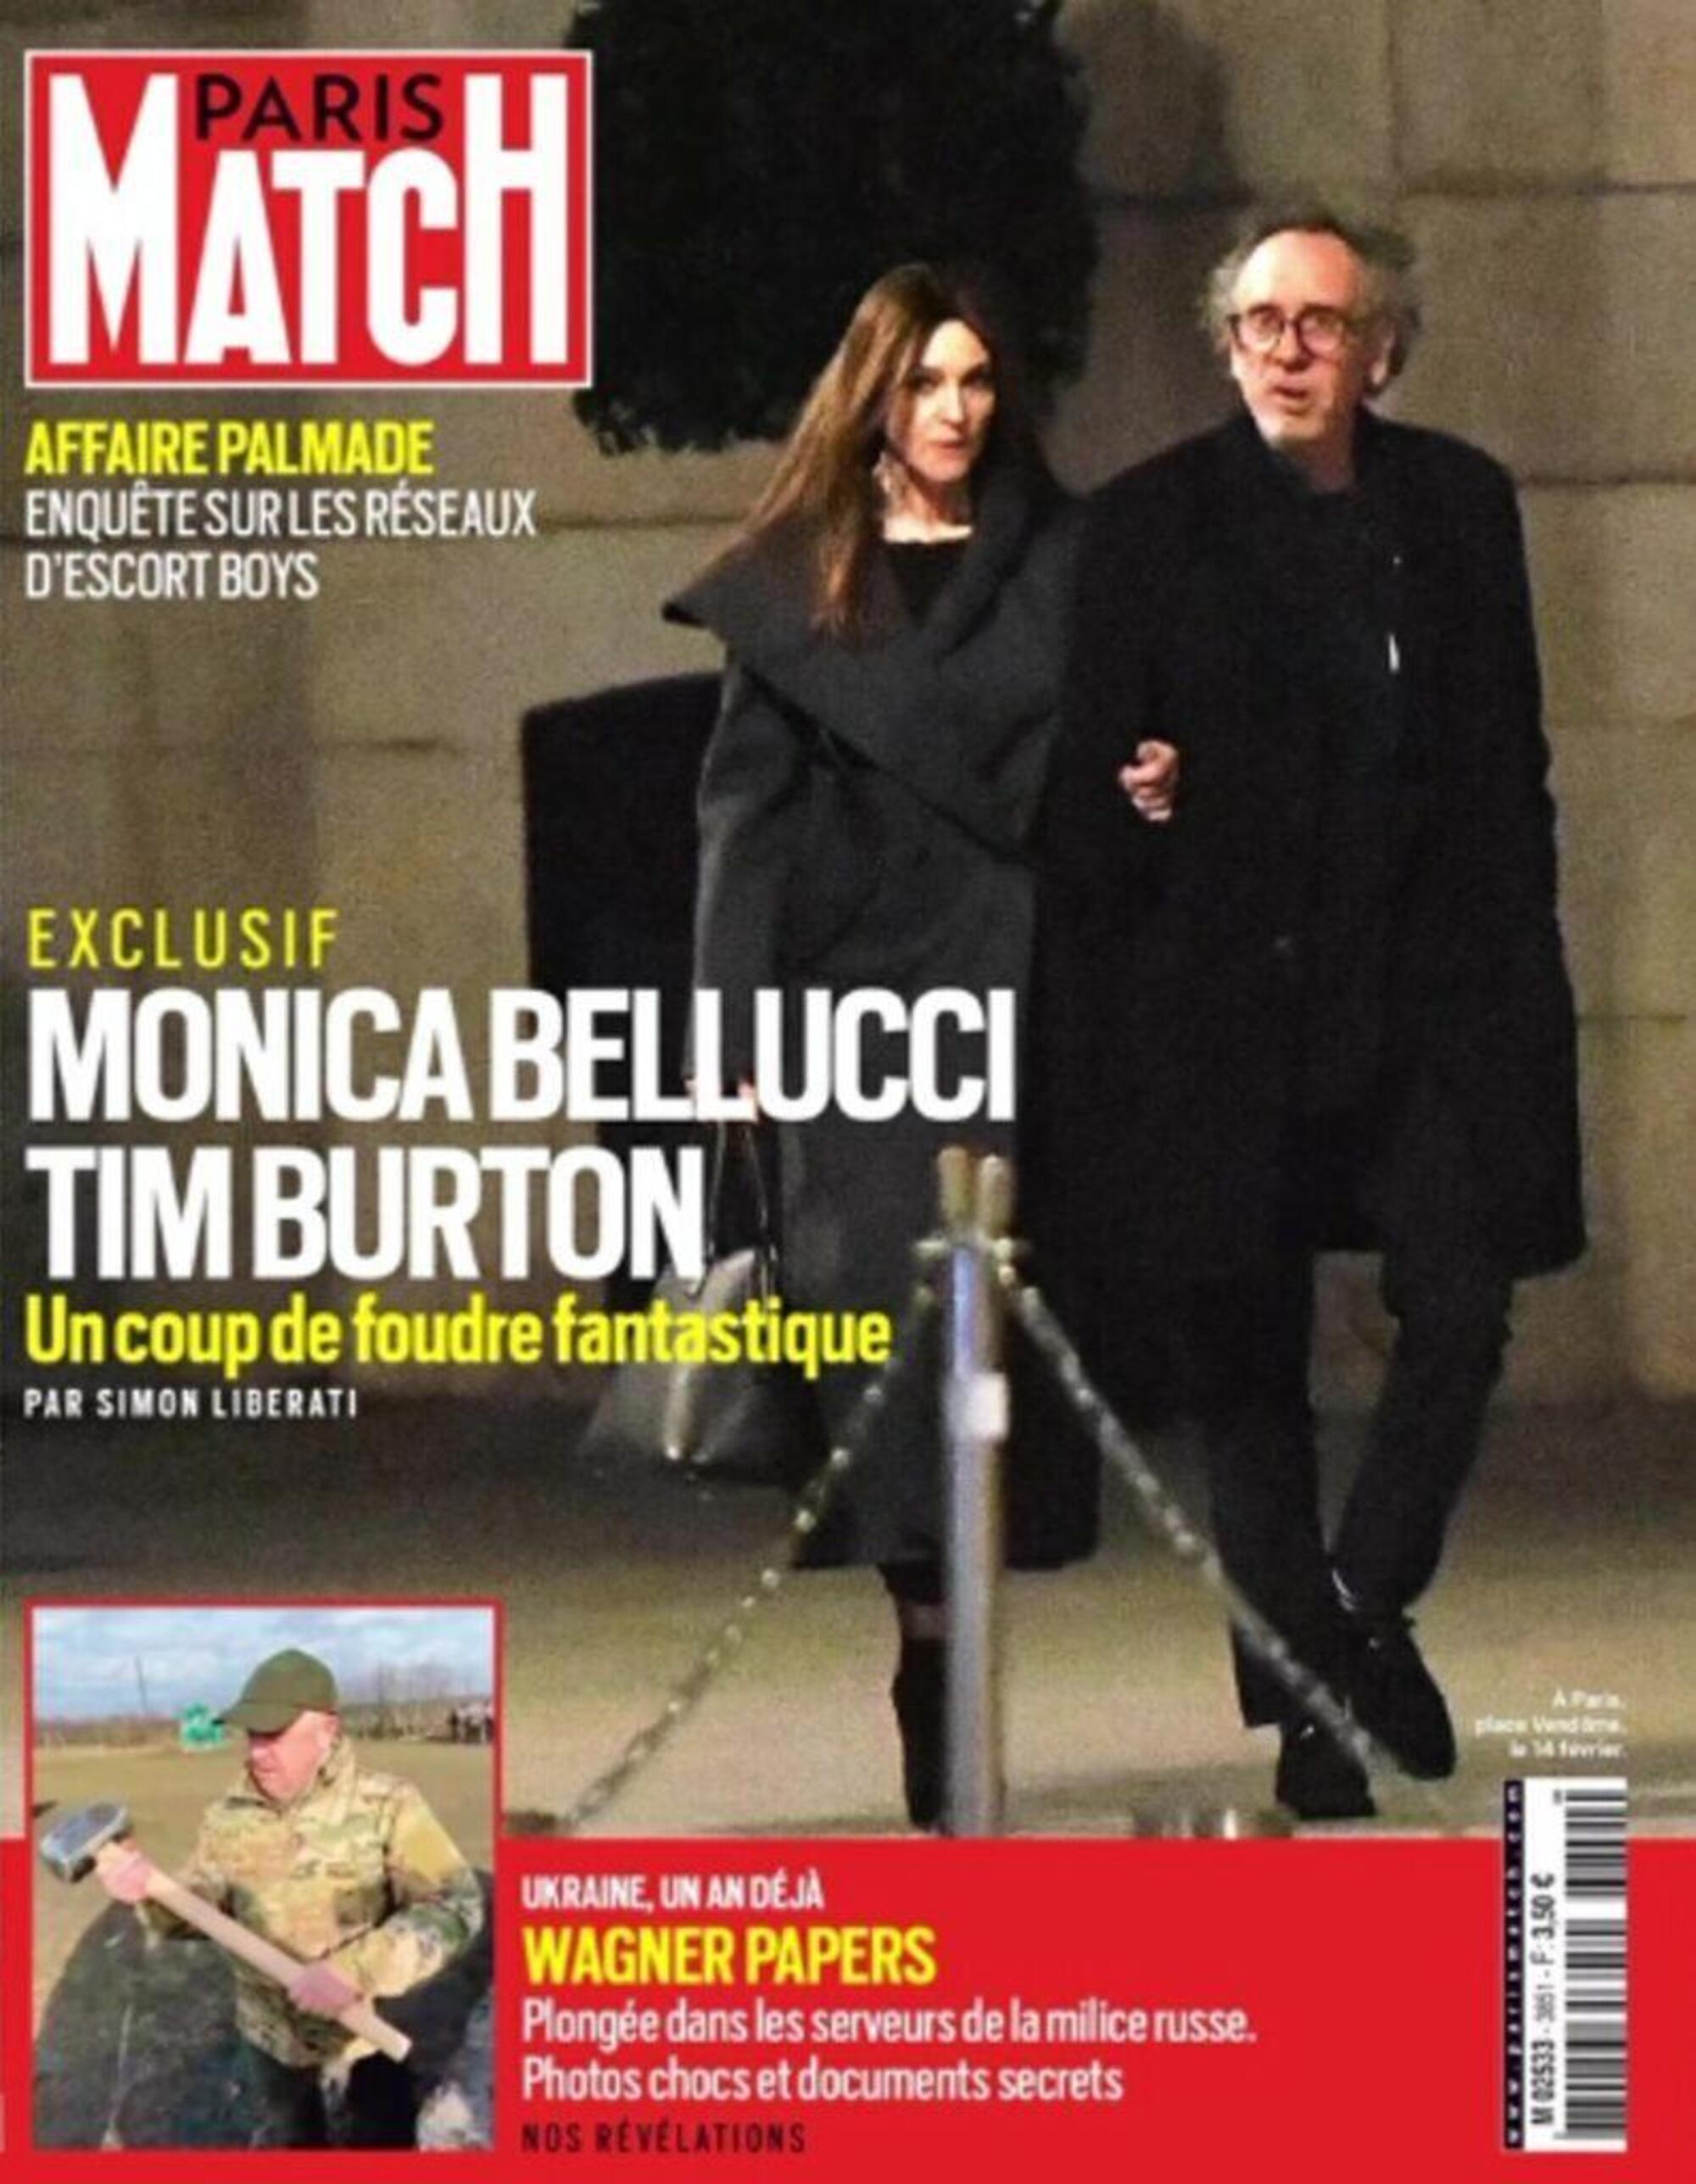 Monica Bellucci e Tim Burton paparazzati sulla rivista Paris Match